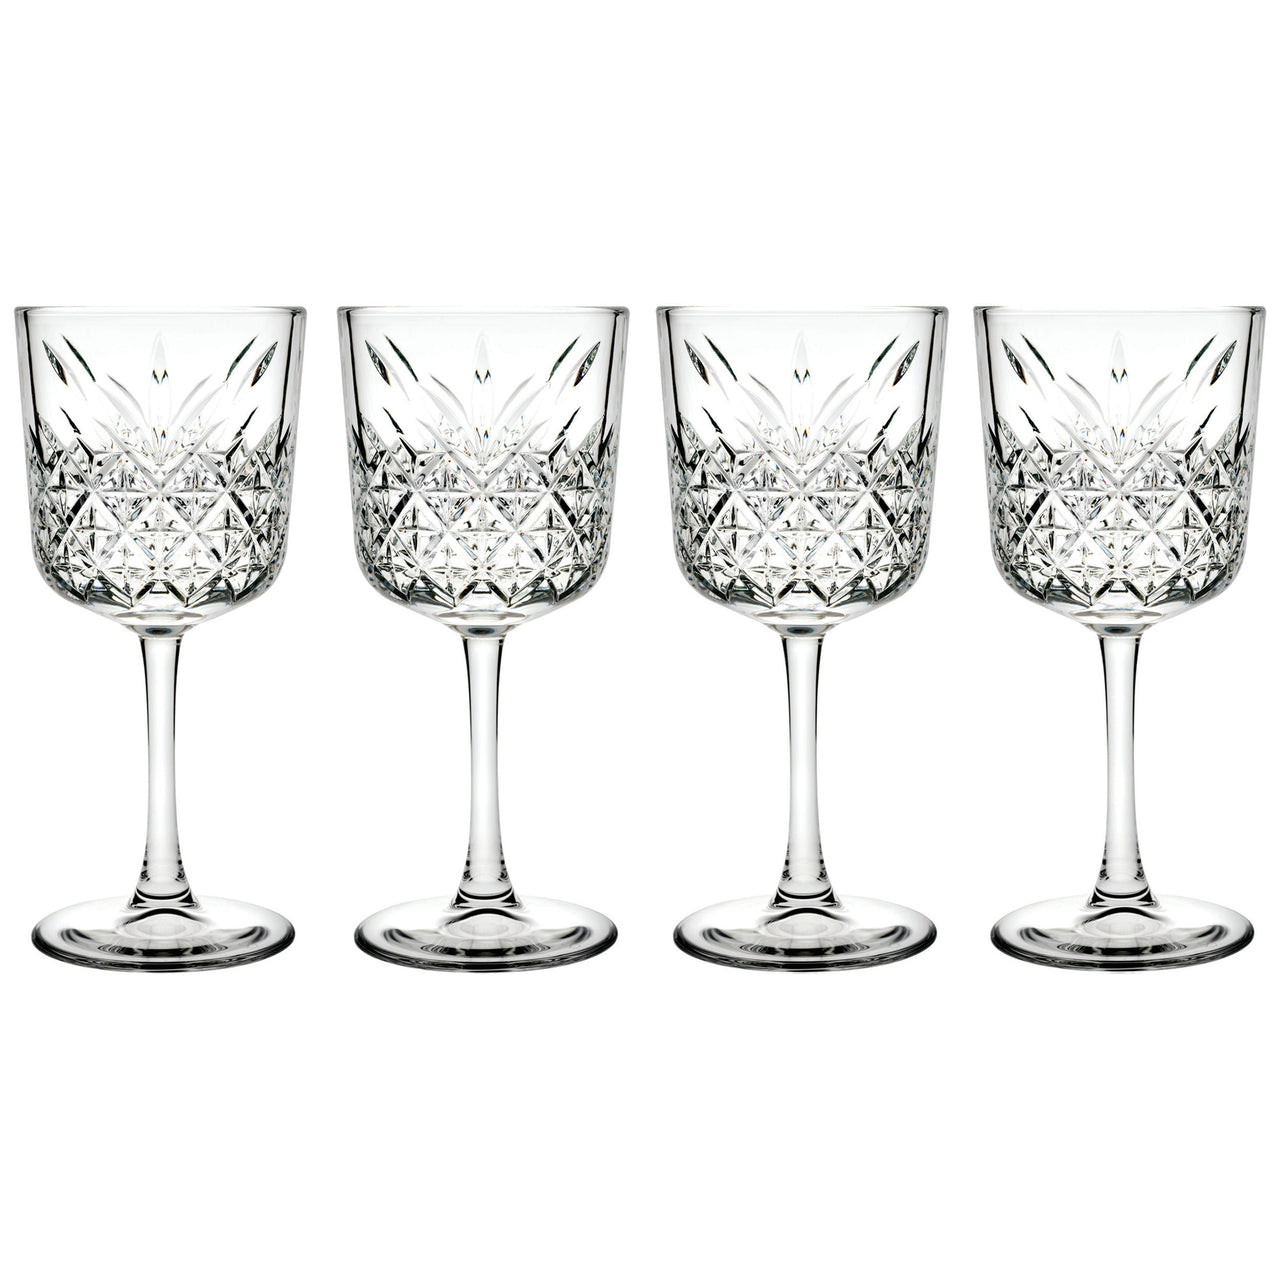 Timeless 330ml Wine Glasses (Set of 4)